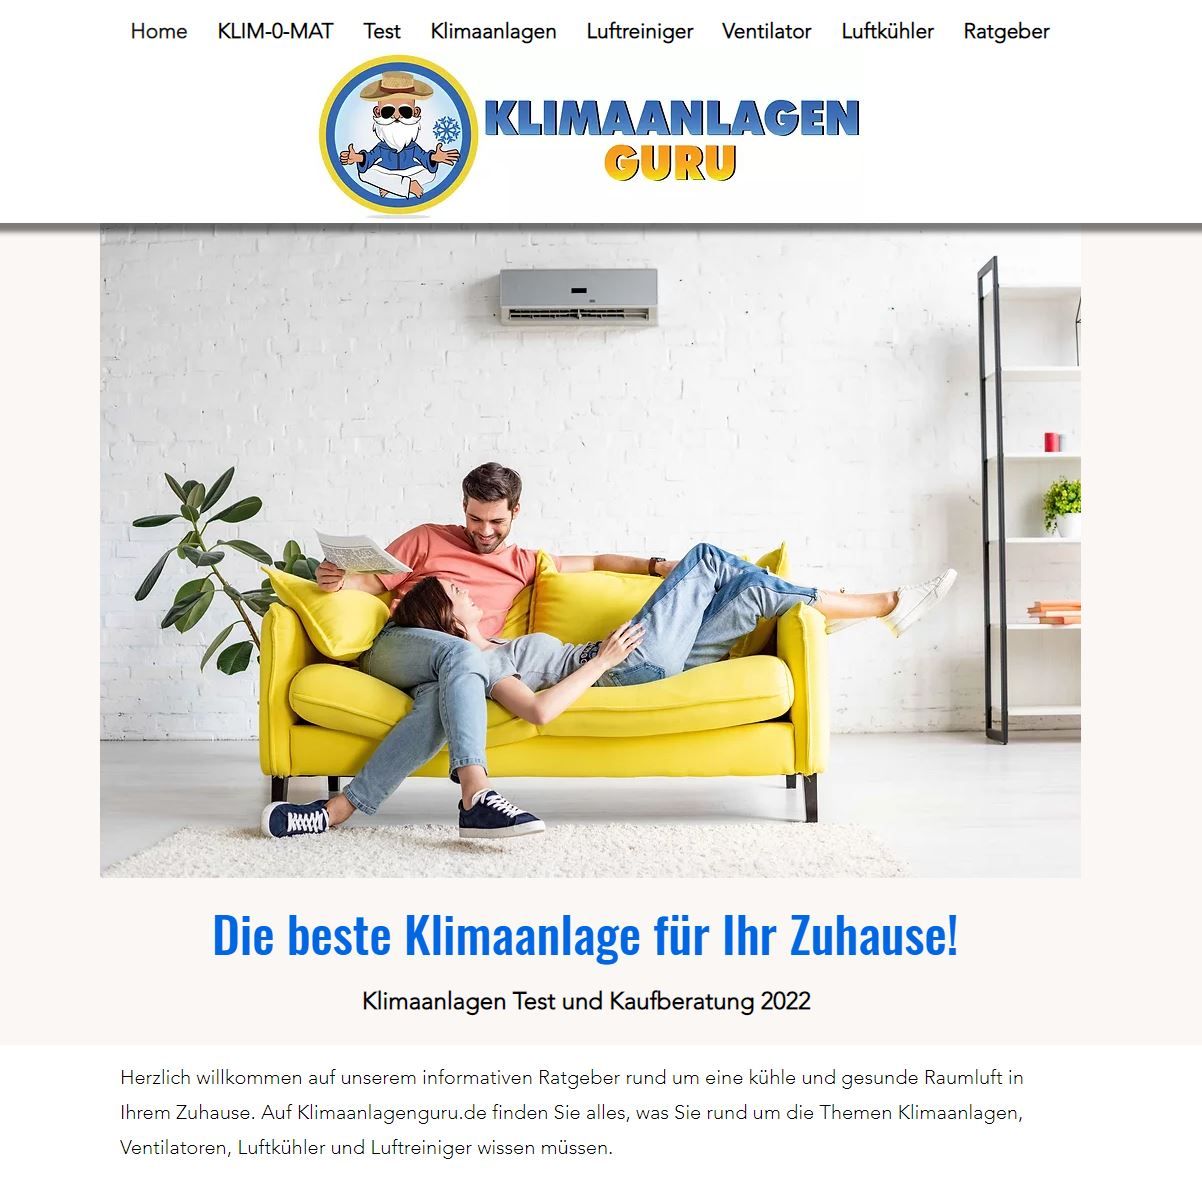 Klimaanlagen-guru.de - 2 Bewertungen - Monheim am Rhein - Schleiderweg |  golocal